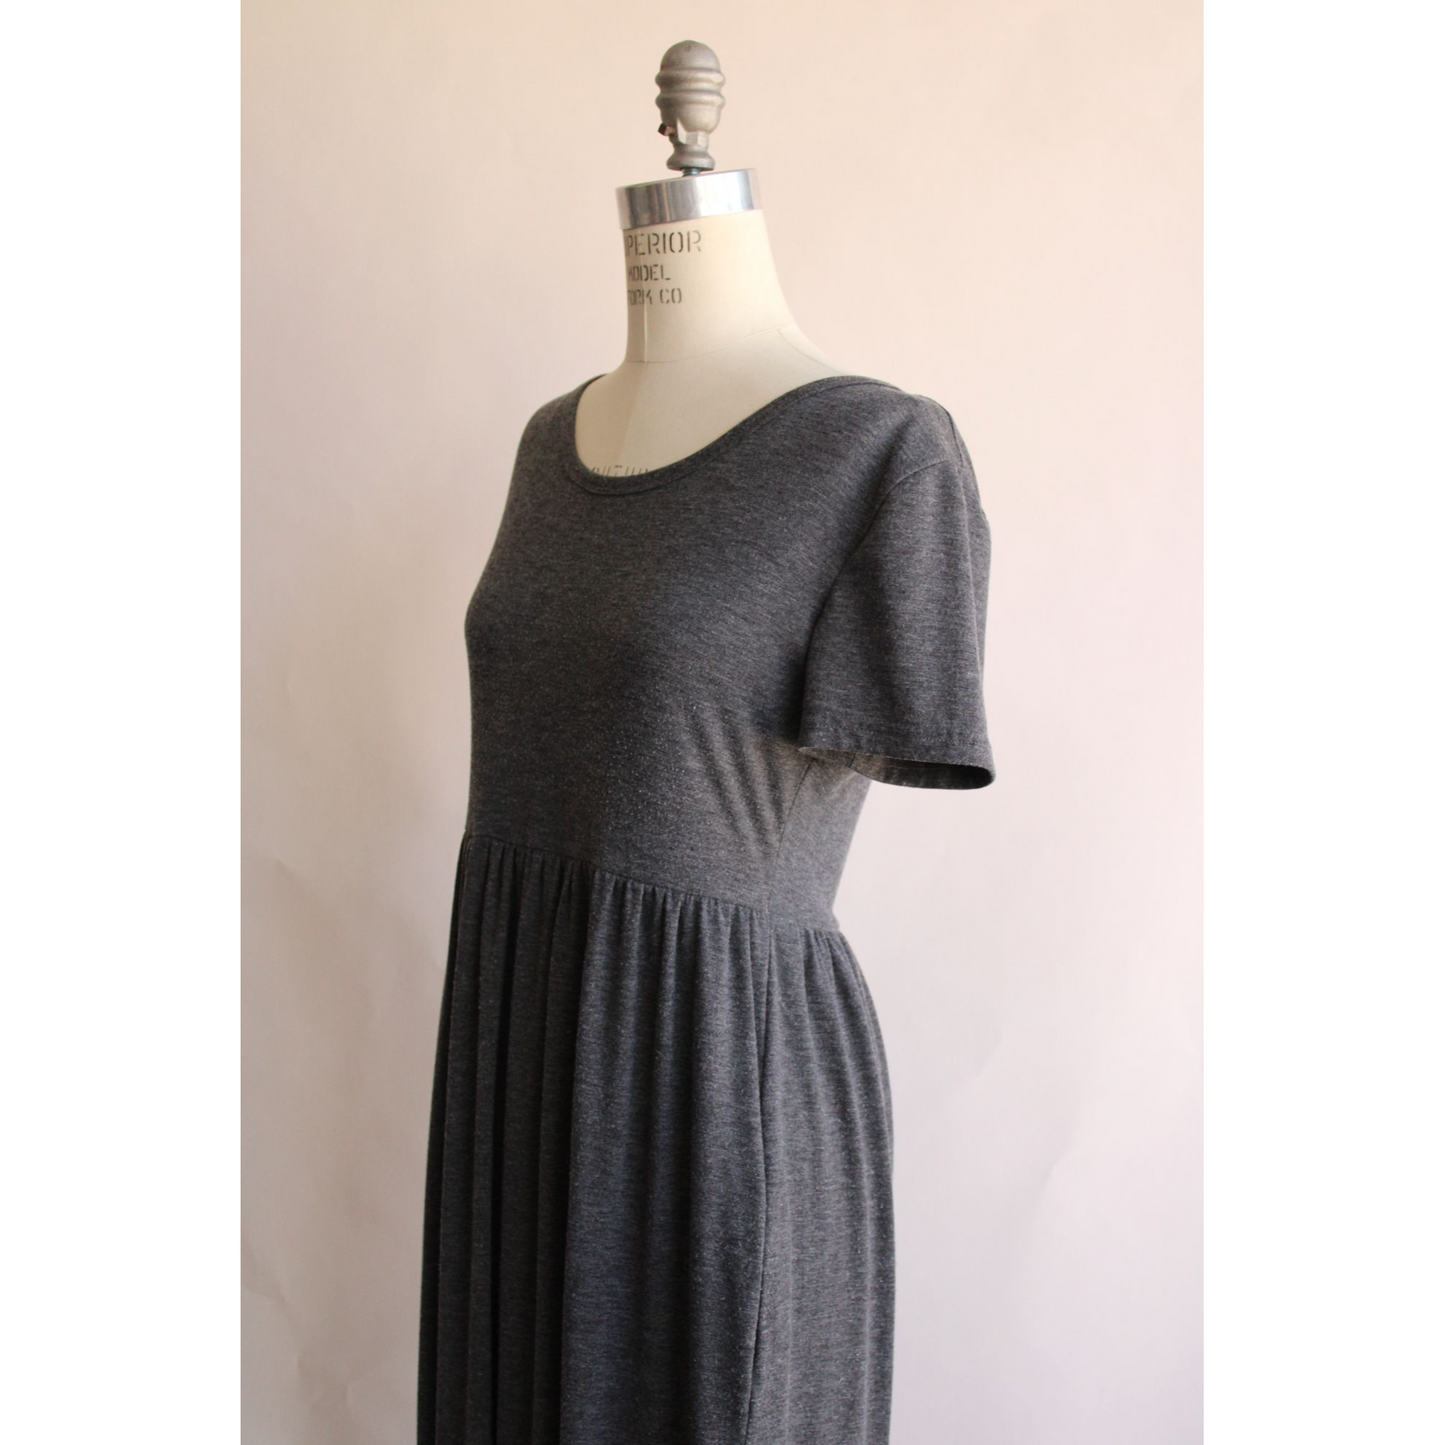 Womens Gray Maxi Dress with Pockets, Size Medium